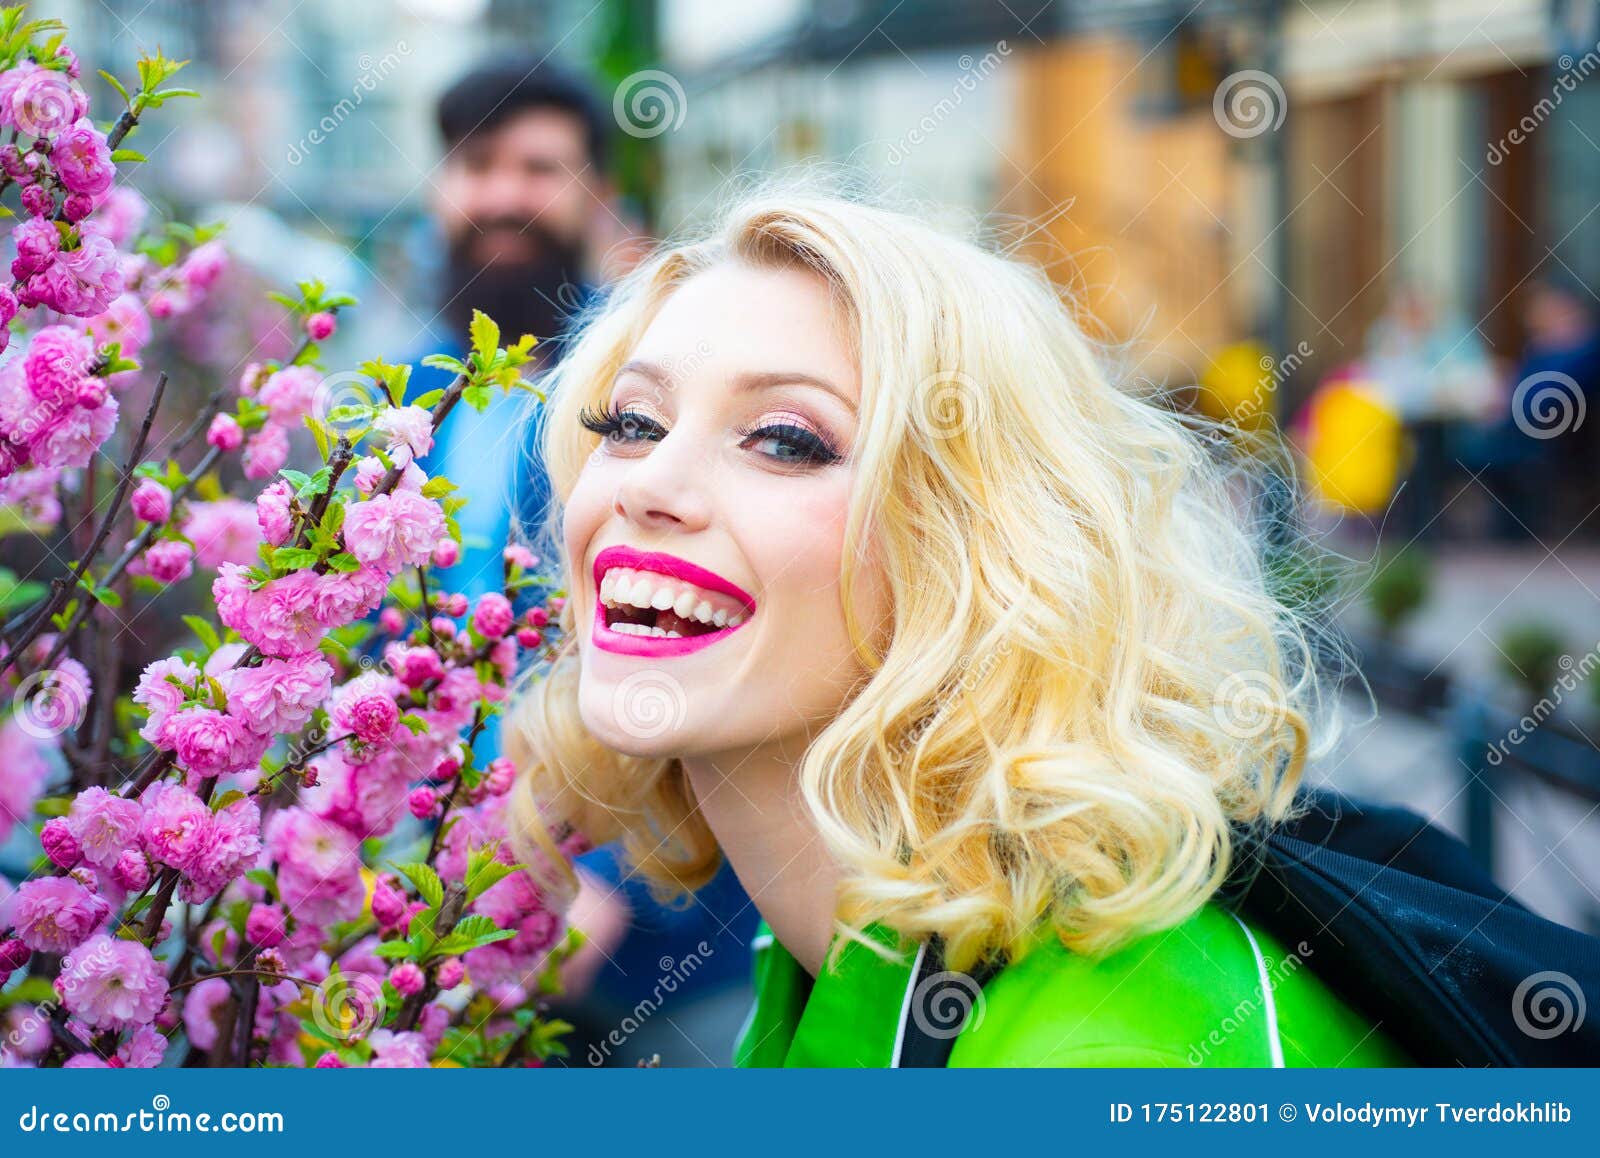 享受盛开春园的年轻女人 库存图片. 图片 包括有 女性, 户外, 迷住, 开花, 方式, 室外, 花卉 - 244590507